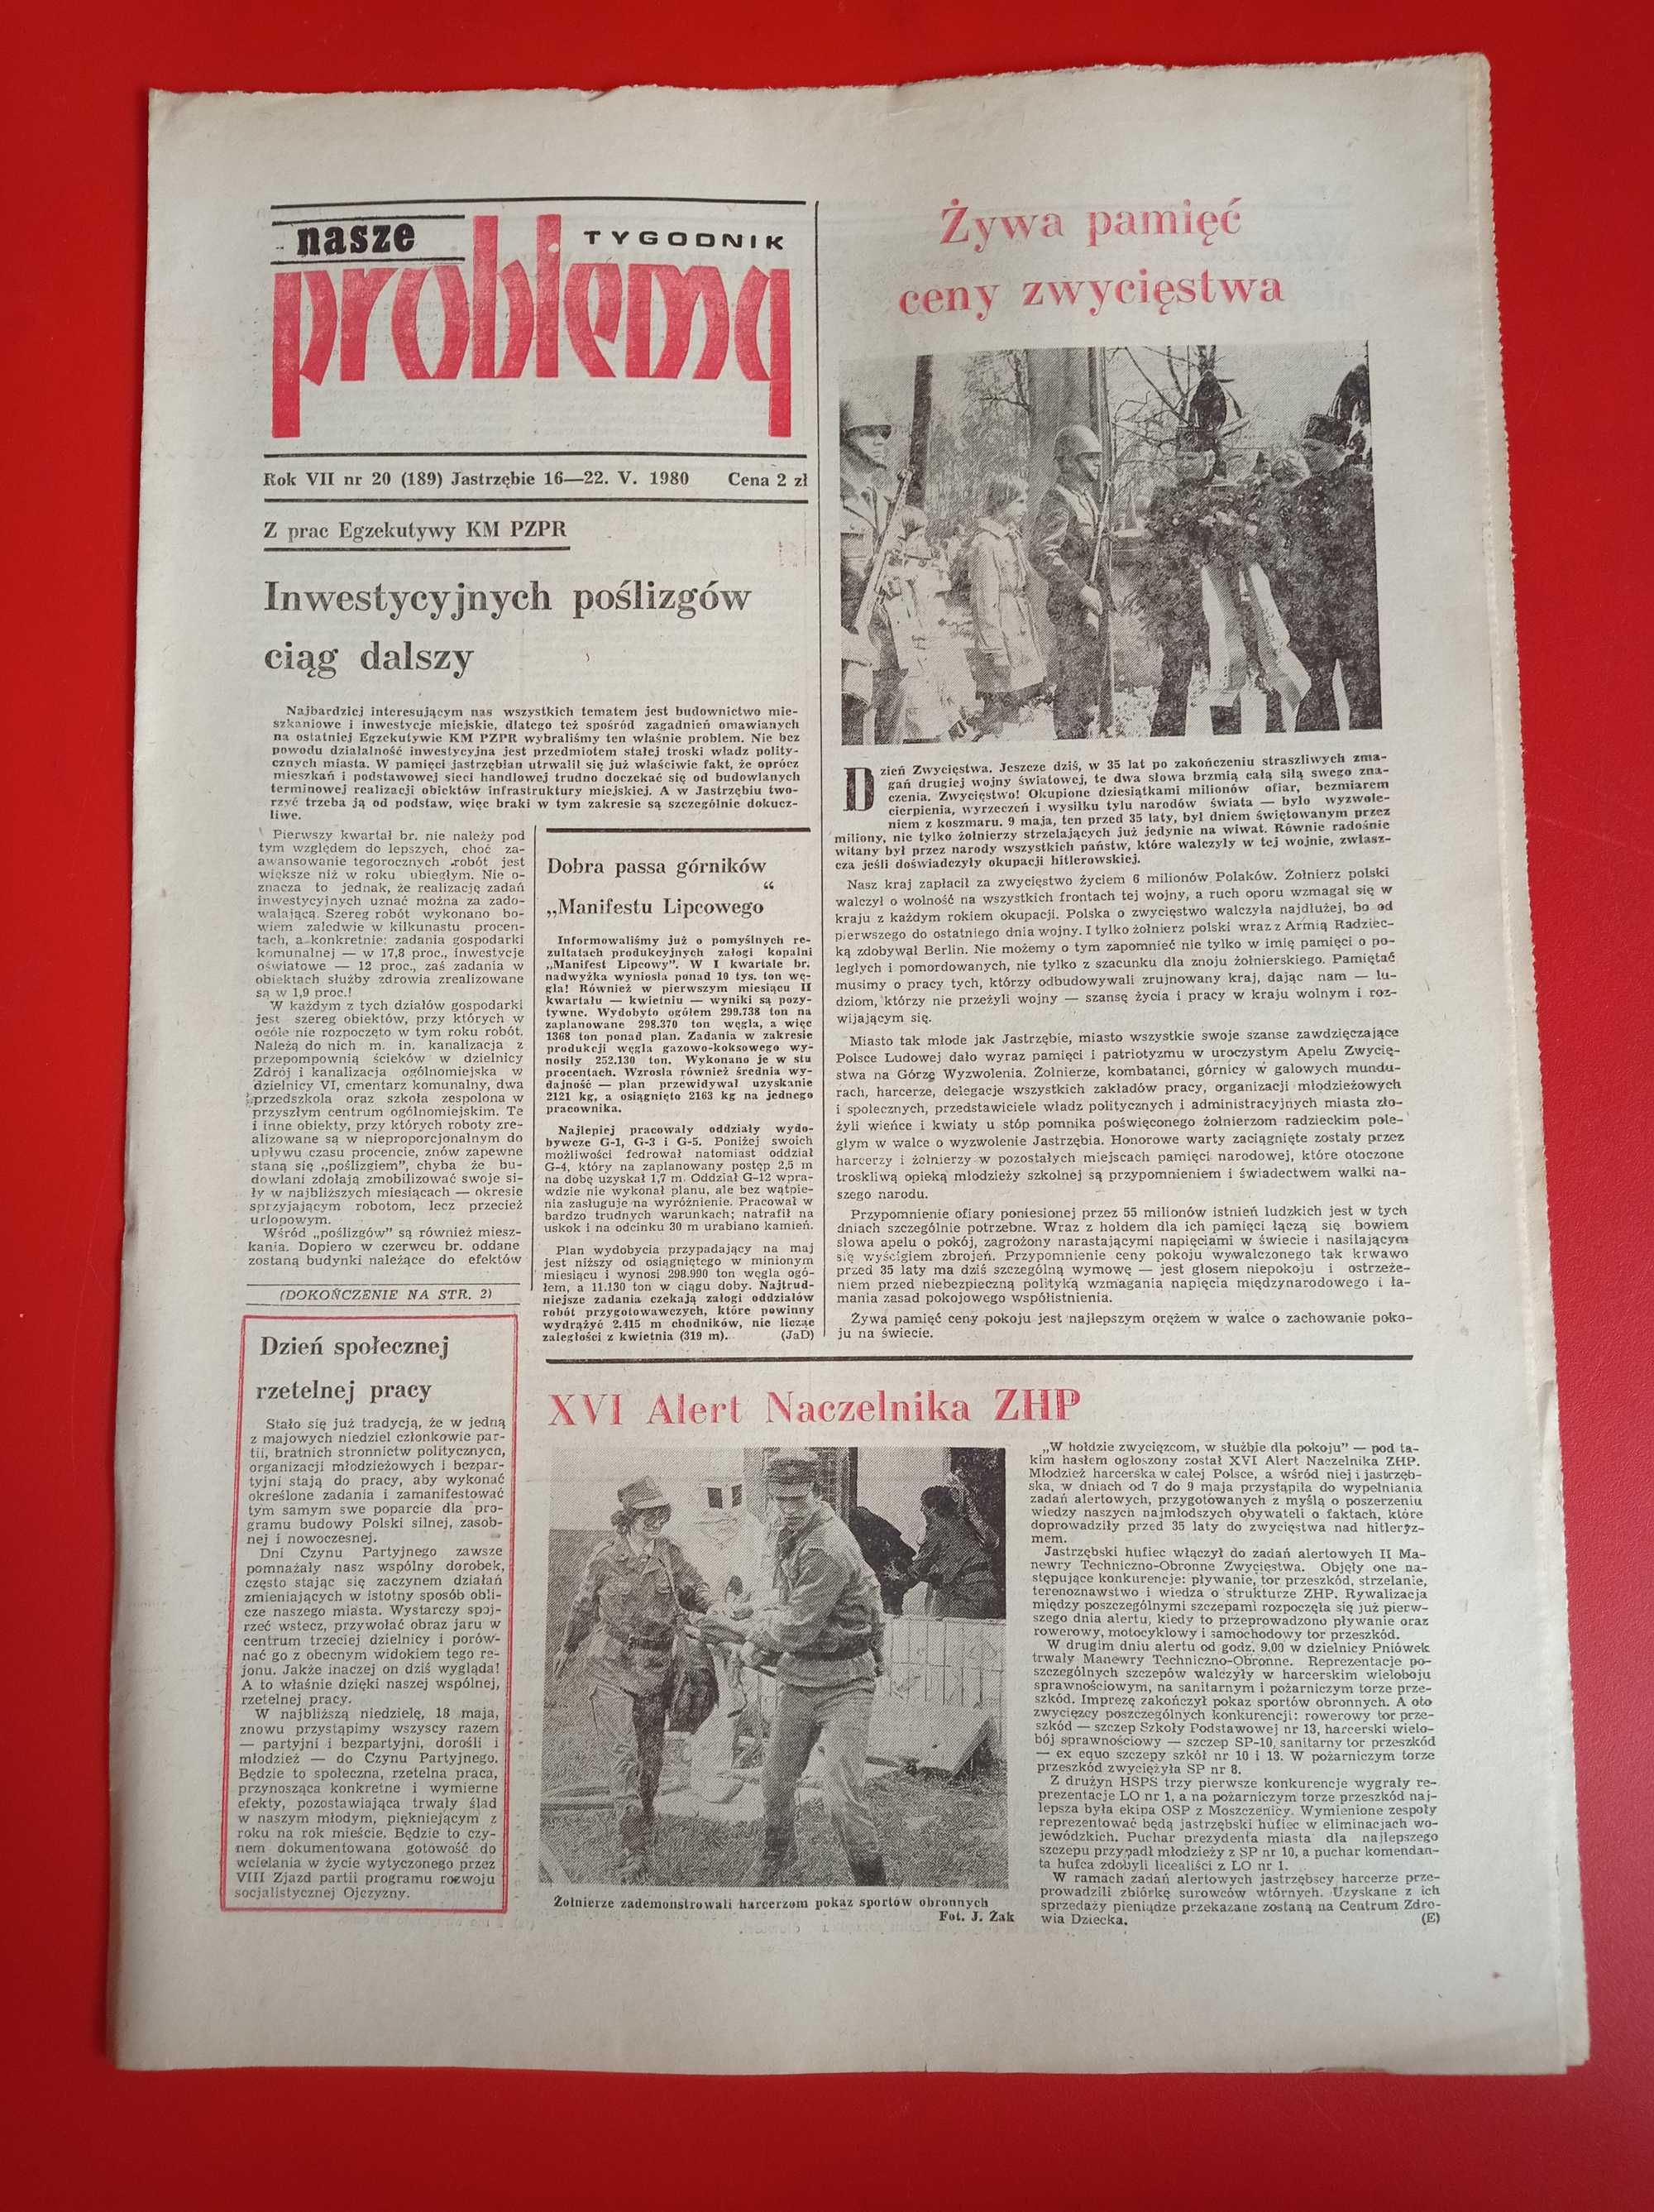 Nasze problemy, Jastrzębie, nr 20, 16-22 maja 1980